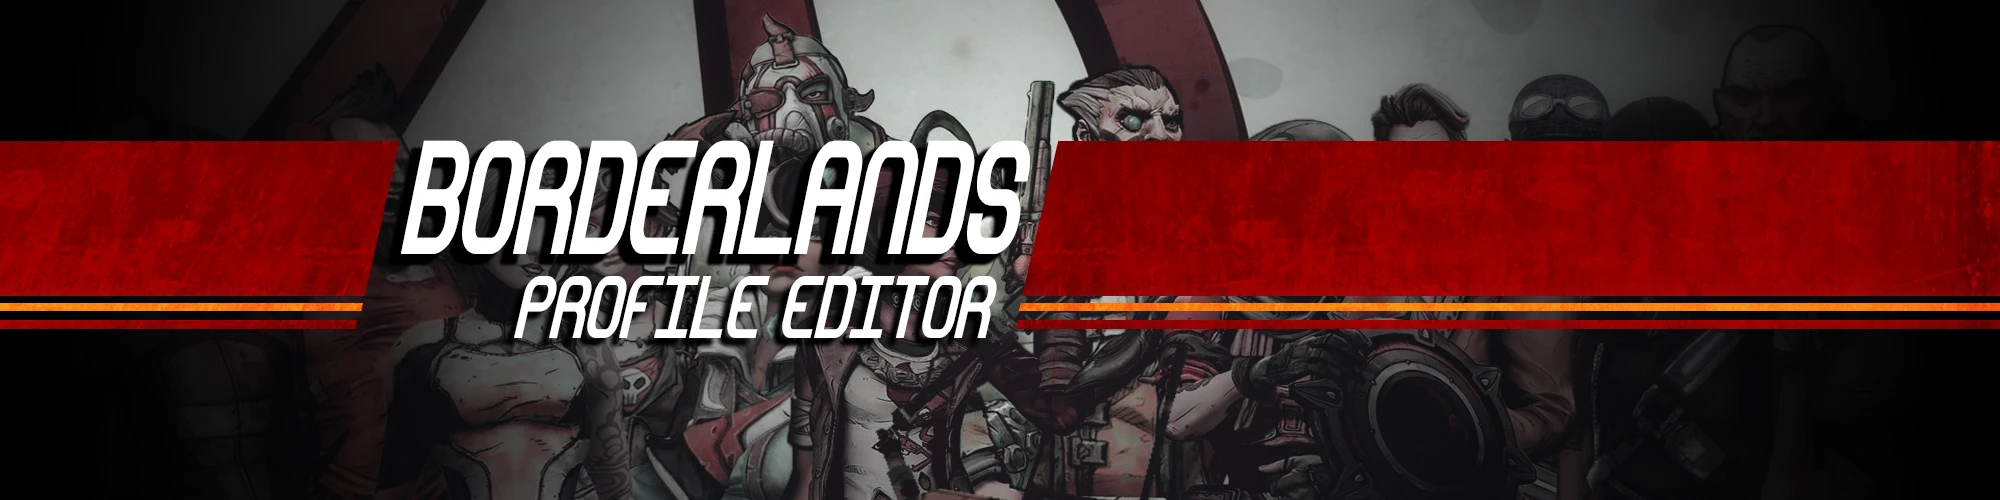 borderlands 2 profile editor pc 2015